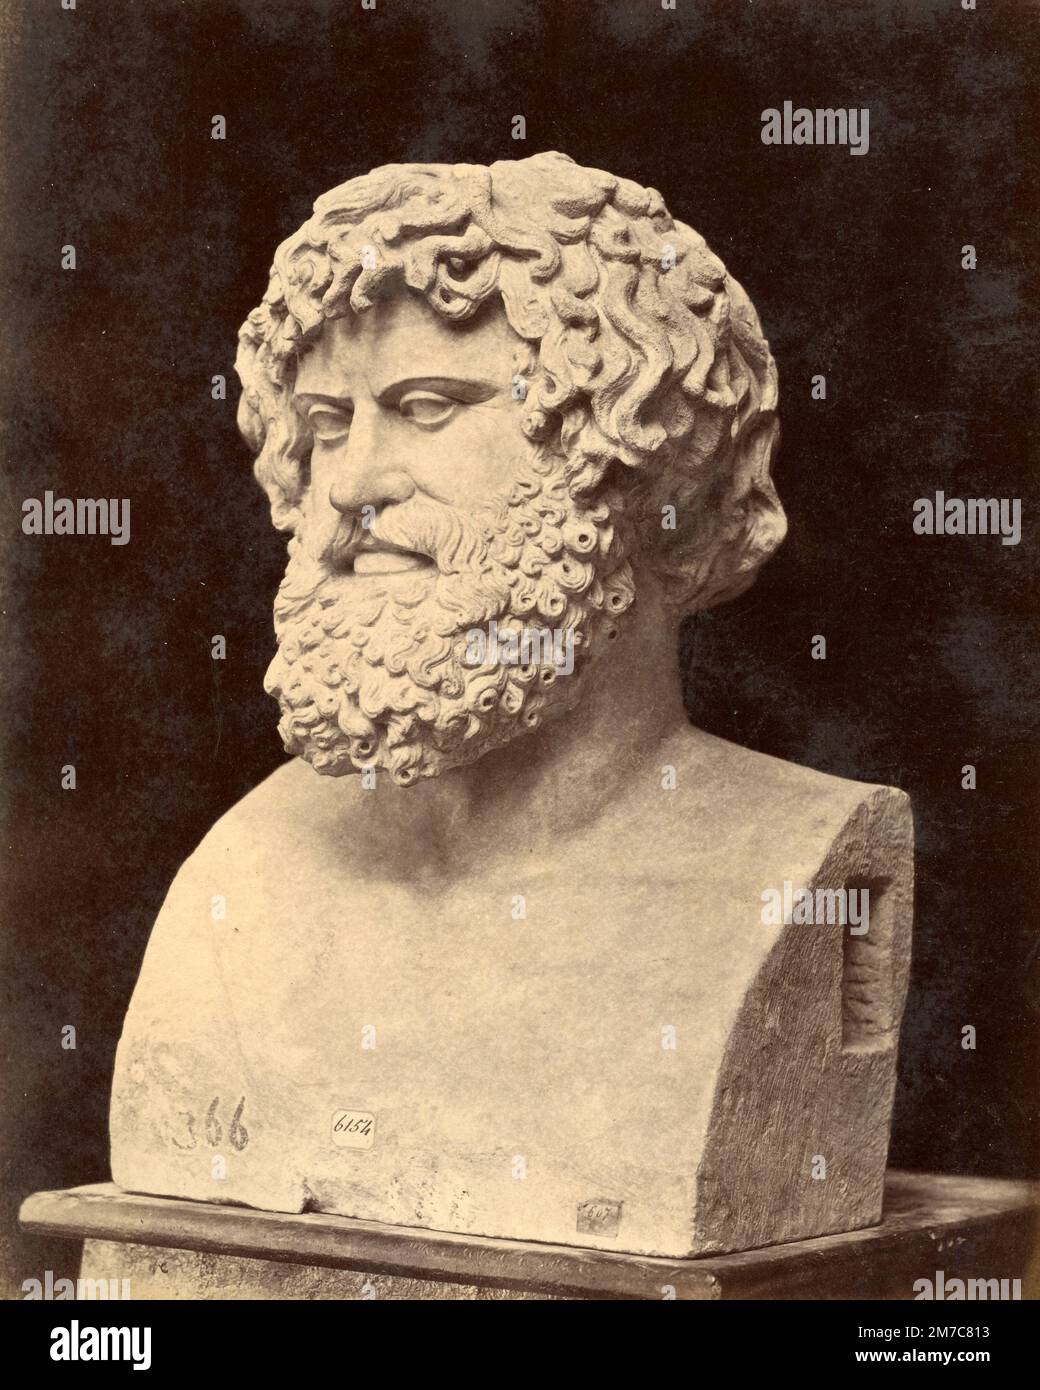 Juba, King of Numidia marble bust,Roman sculpture, albumen print, 1870s Stock Photo